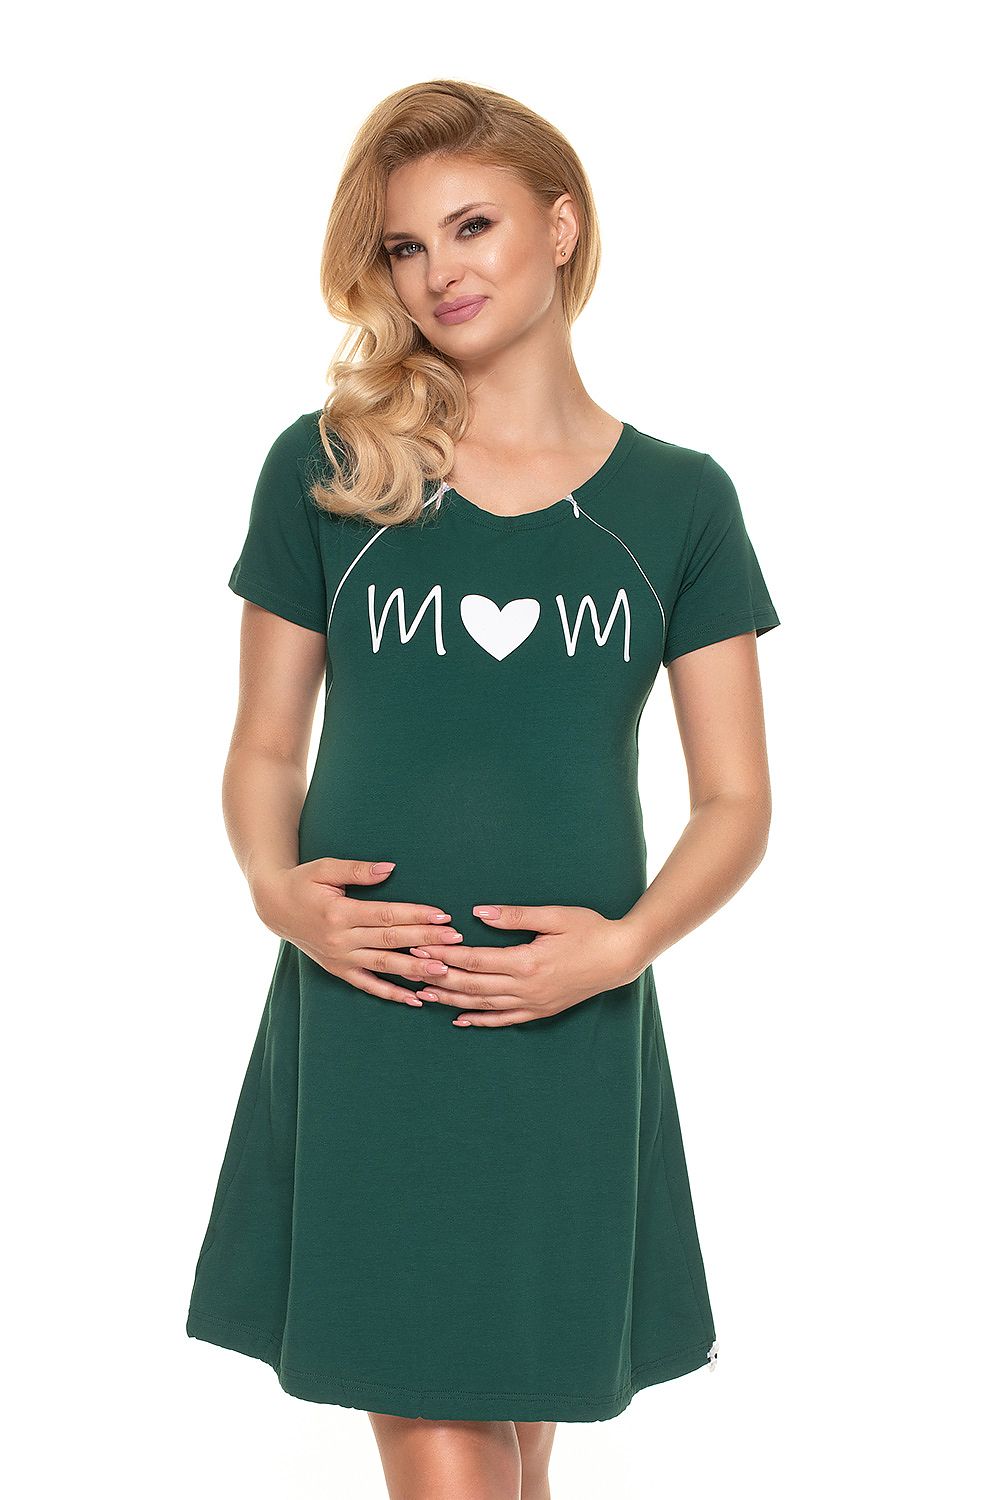 Peekaboo Camicia da notte allattamento Camicia da notte allattamento gravidanza allattamento Moda Motivo Nuovo 